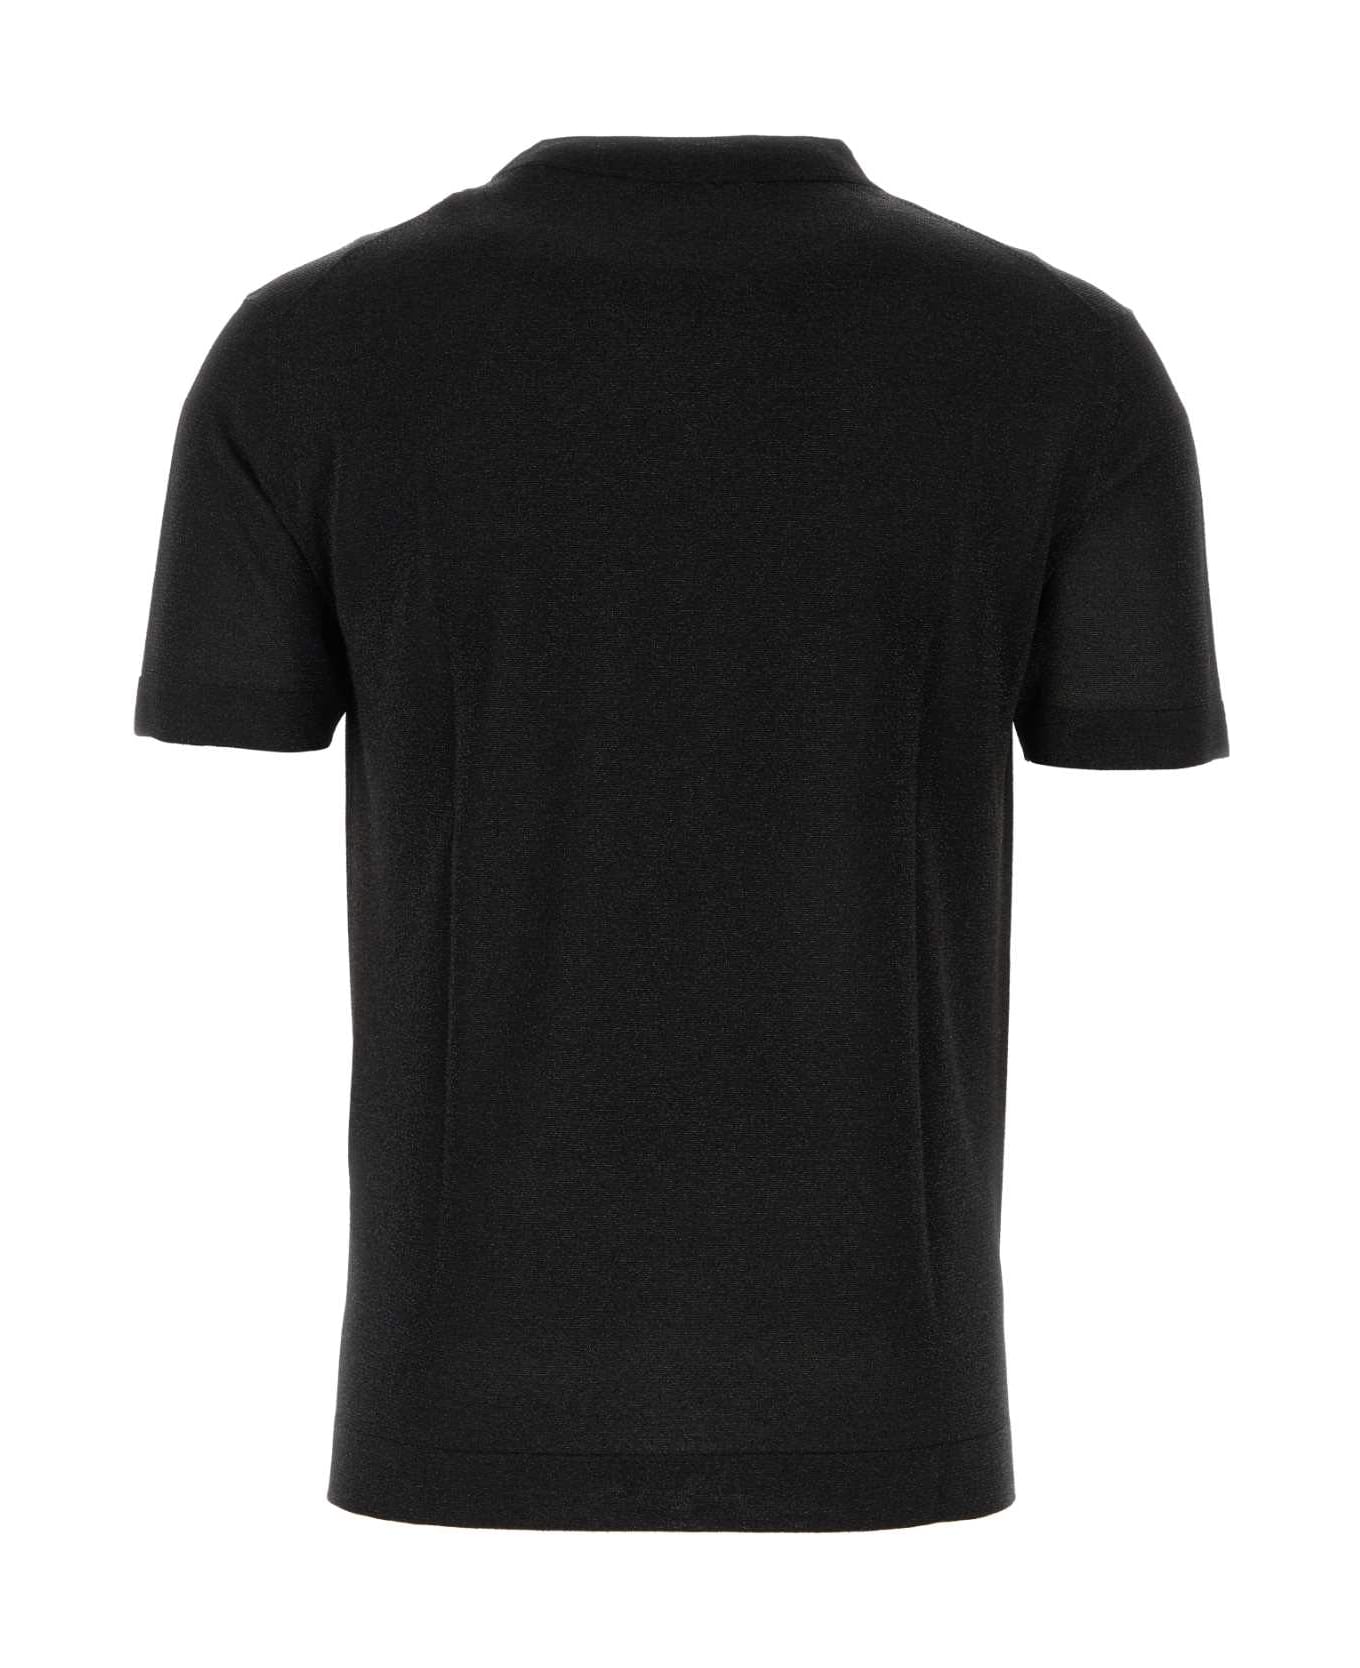 Missoni Black Viscose Blend T-shirt - S91J5